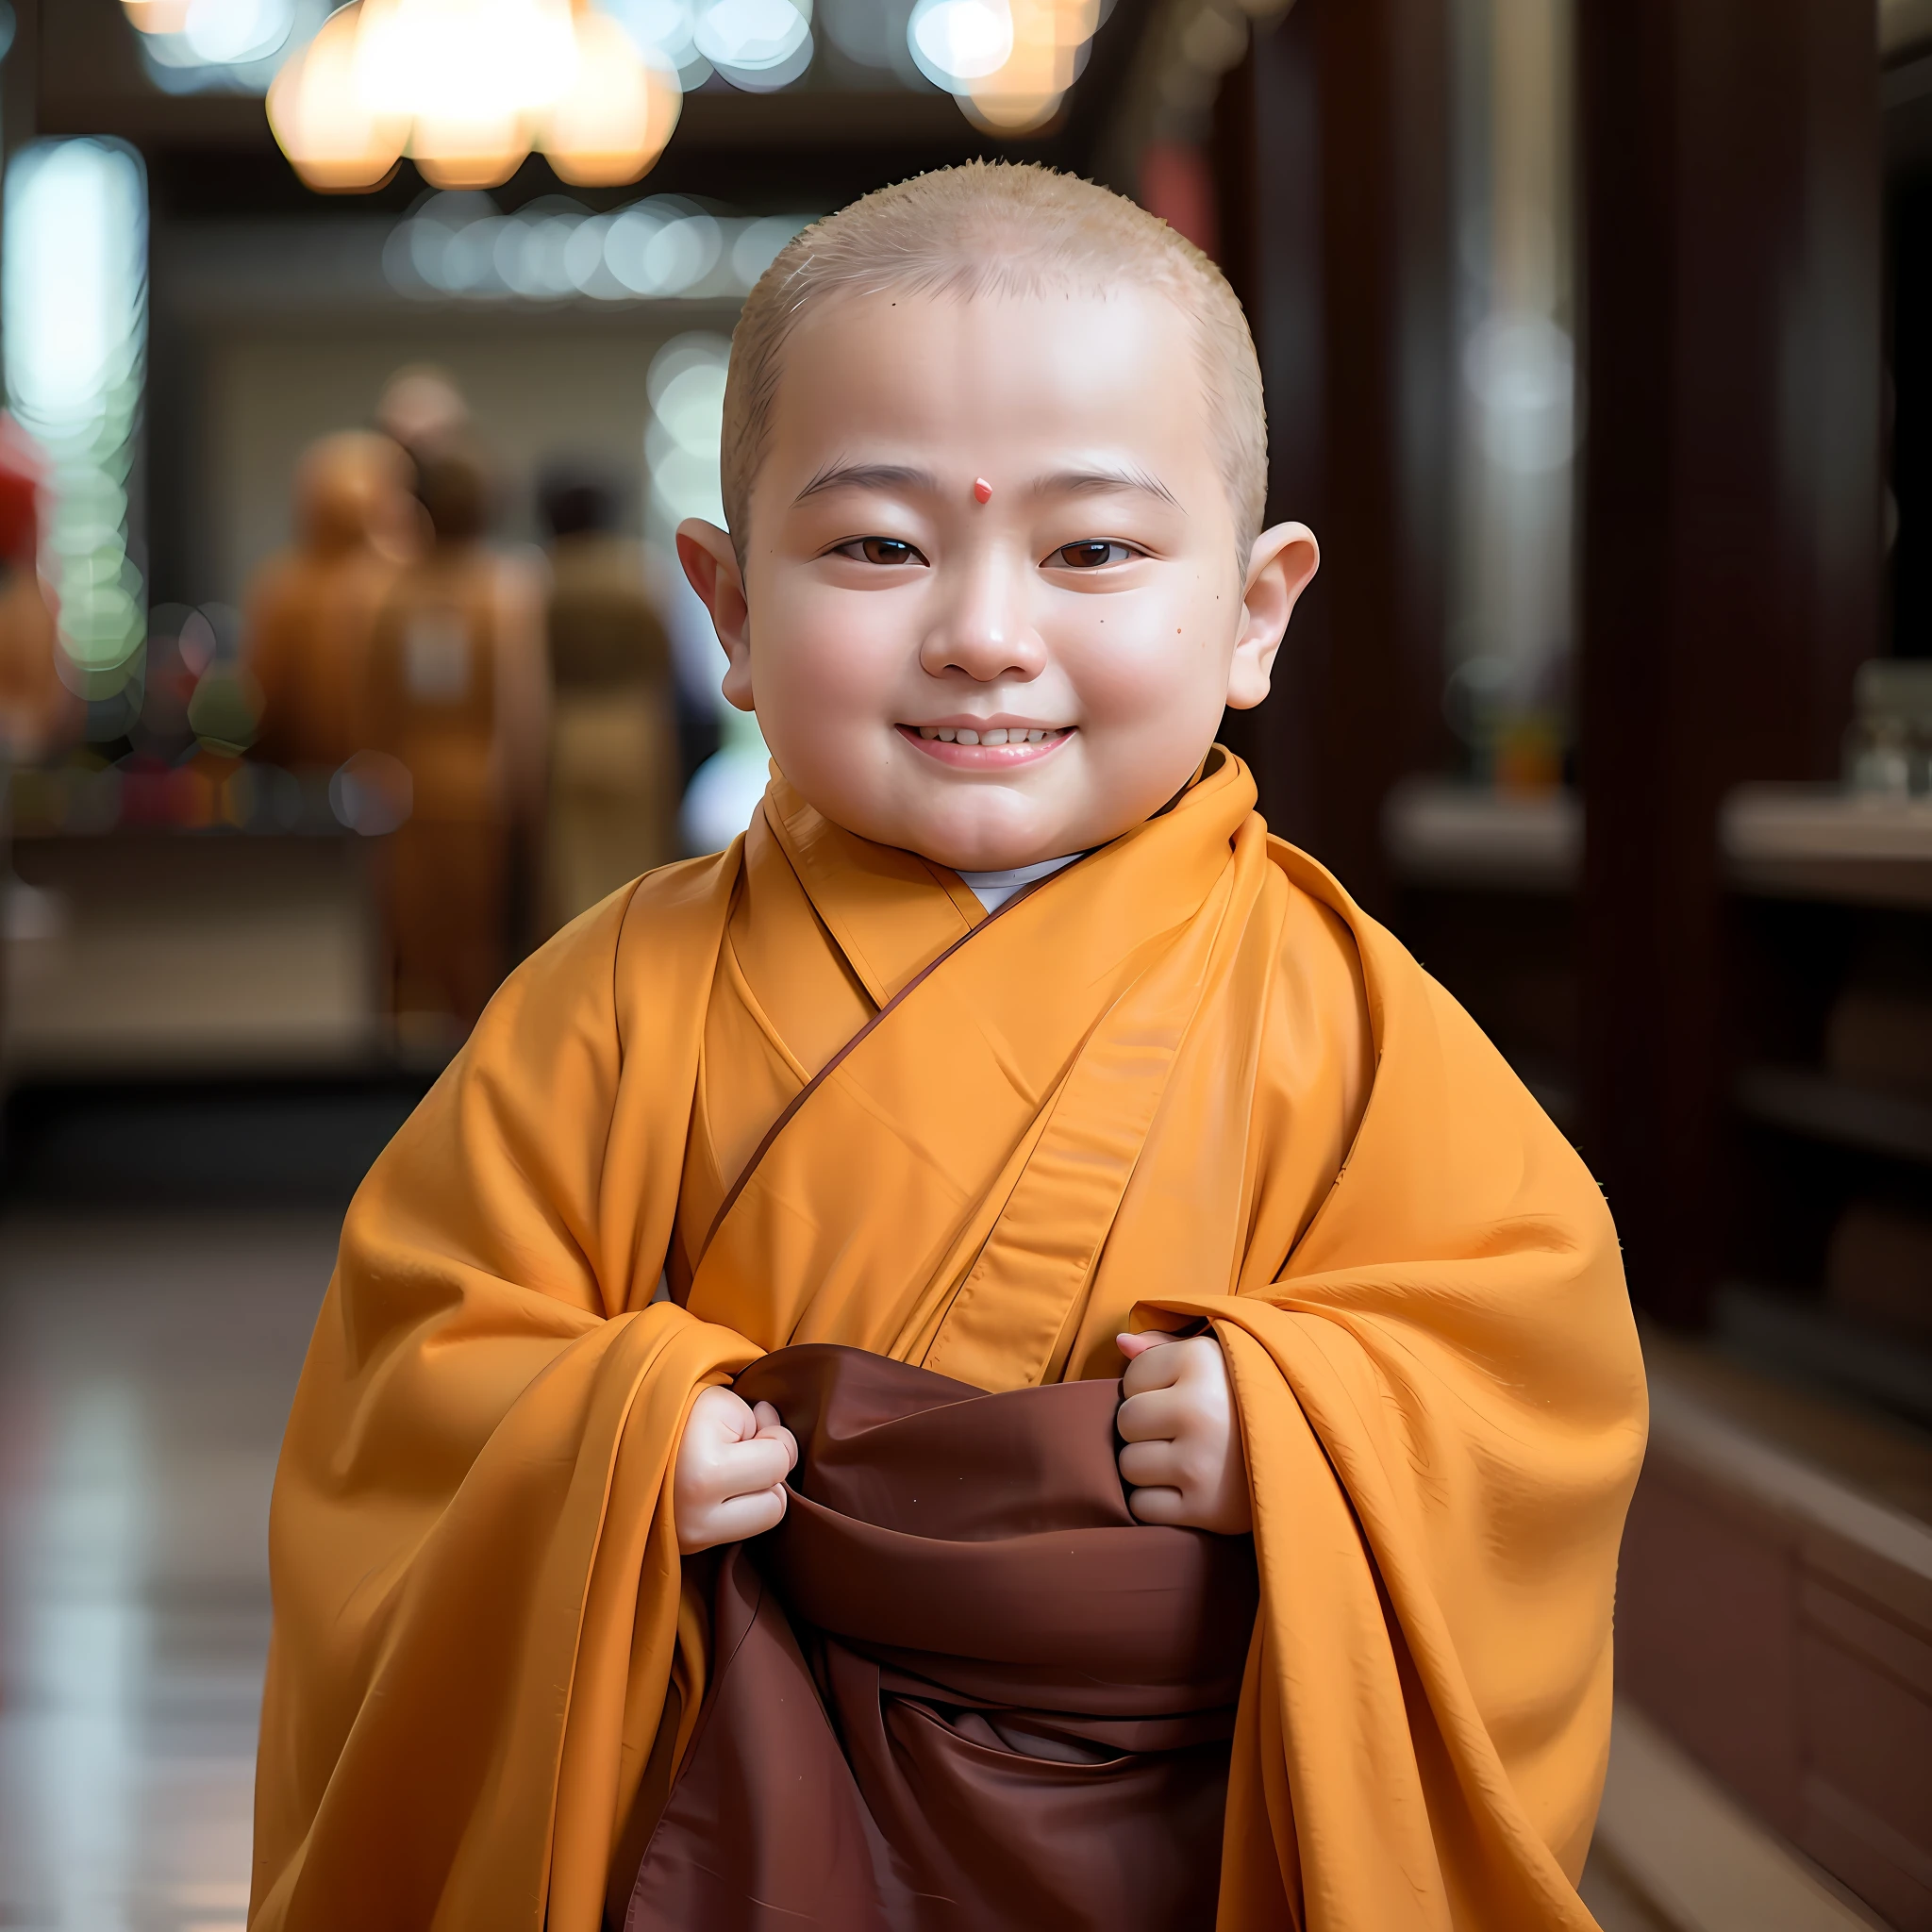 其他, a baby in a 僧侶's robe, 微笑著拿著一塊布, wearing 棕色長袍s, 僧侶 clothes, buddhist 僧侶, 穿著修女裝的小男孩, 穿著飄逸的長袍, 佛教徒, portrait of 僧侶, 穿著簡單的長袍, 僧侶, ancient japanese 僧侶, 2 1 st century 僧侶, 和尚的袈裟, 穿著棕色絕地長袍, 棕色長袍, 幼兒臉，禿頭的。